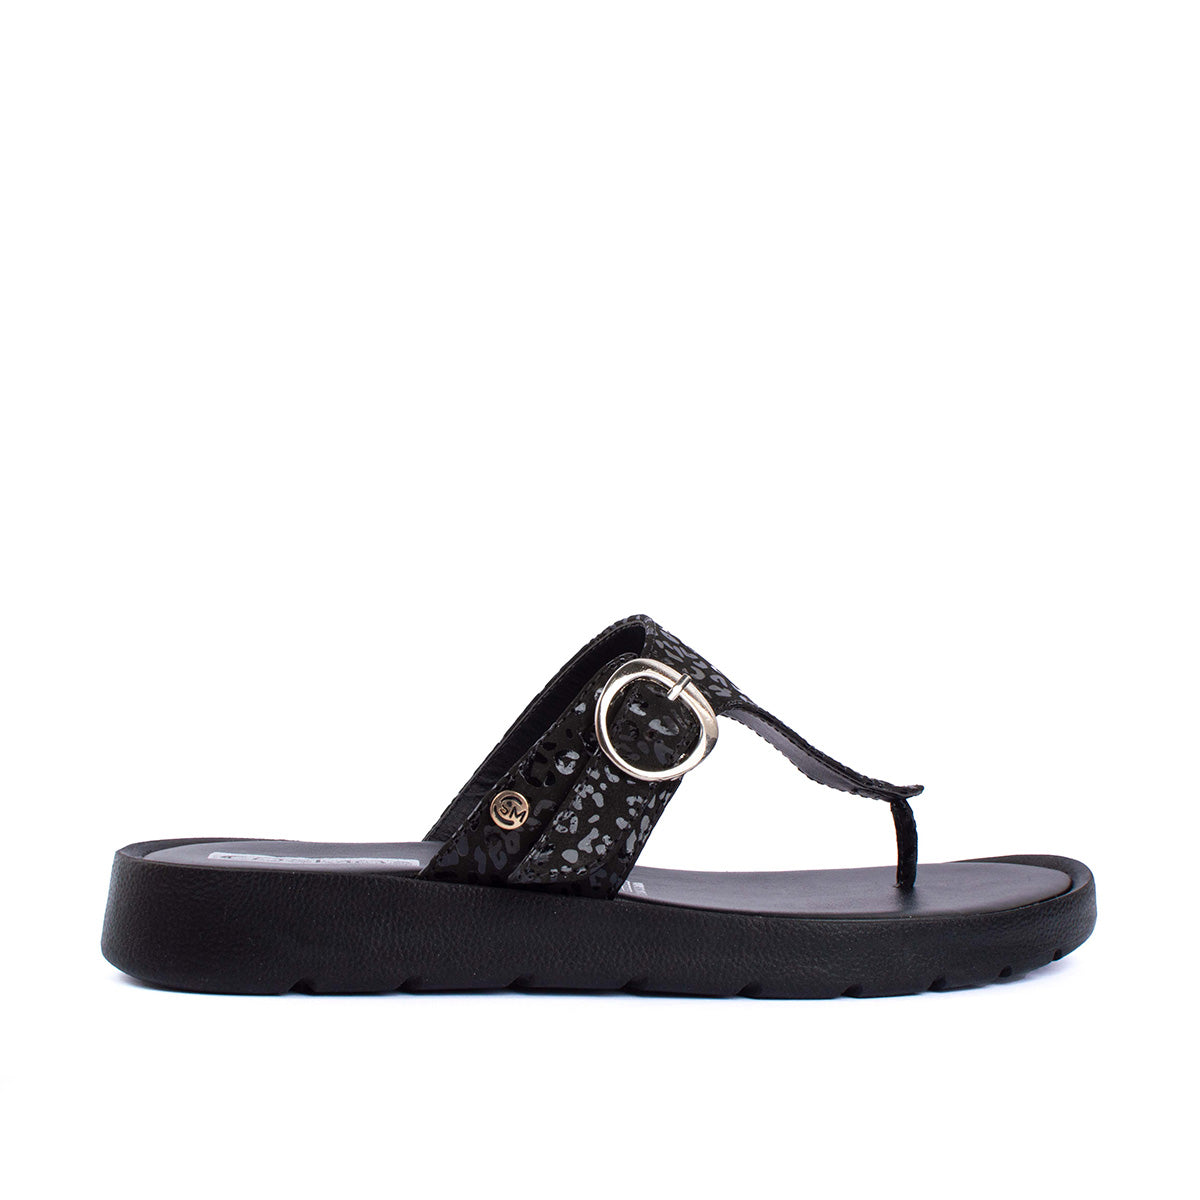 Sandalias planas en cuero color negro con estampado animal print 104047